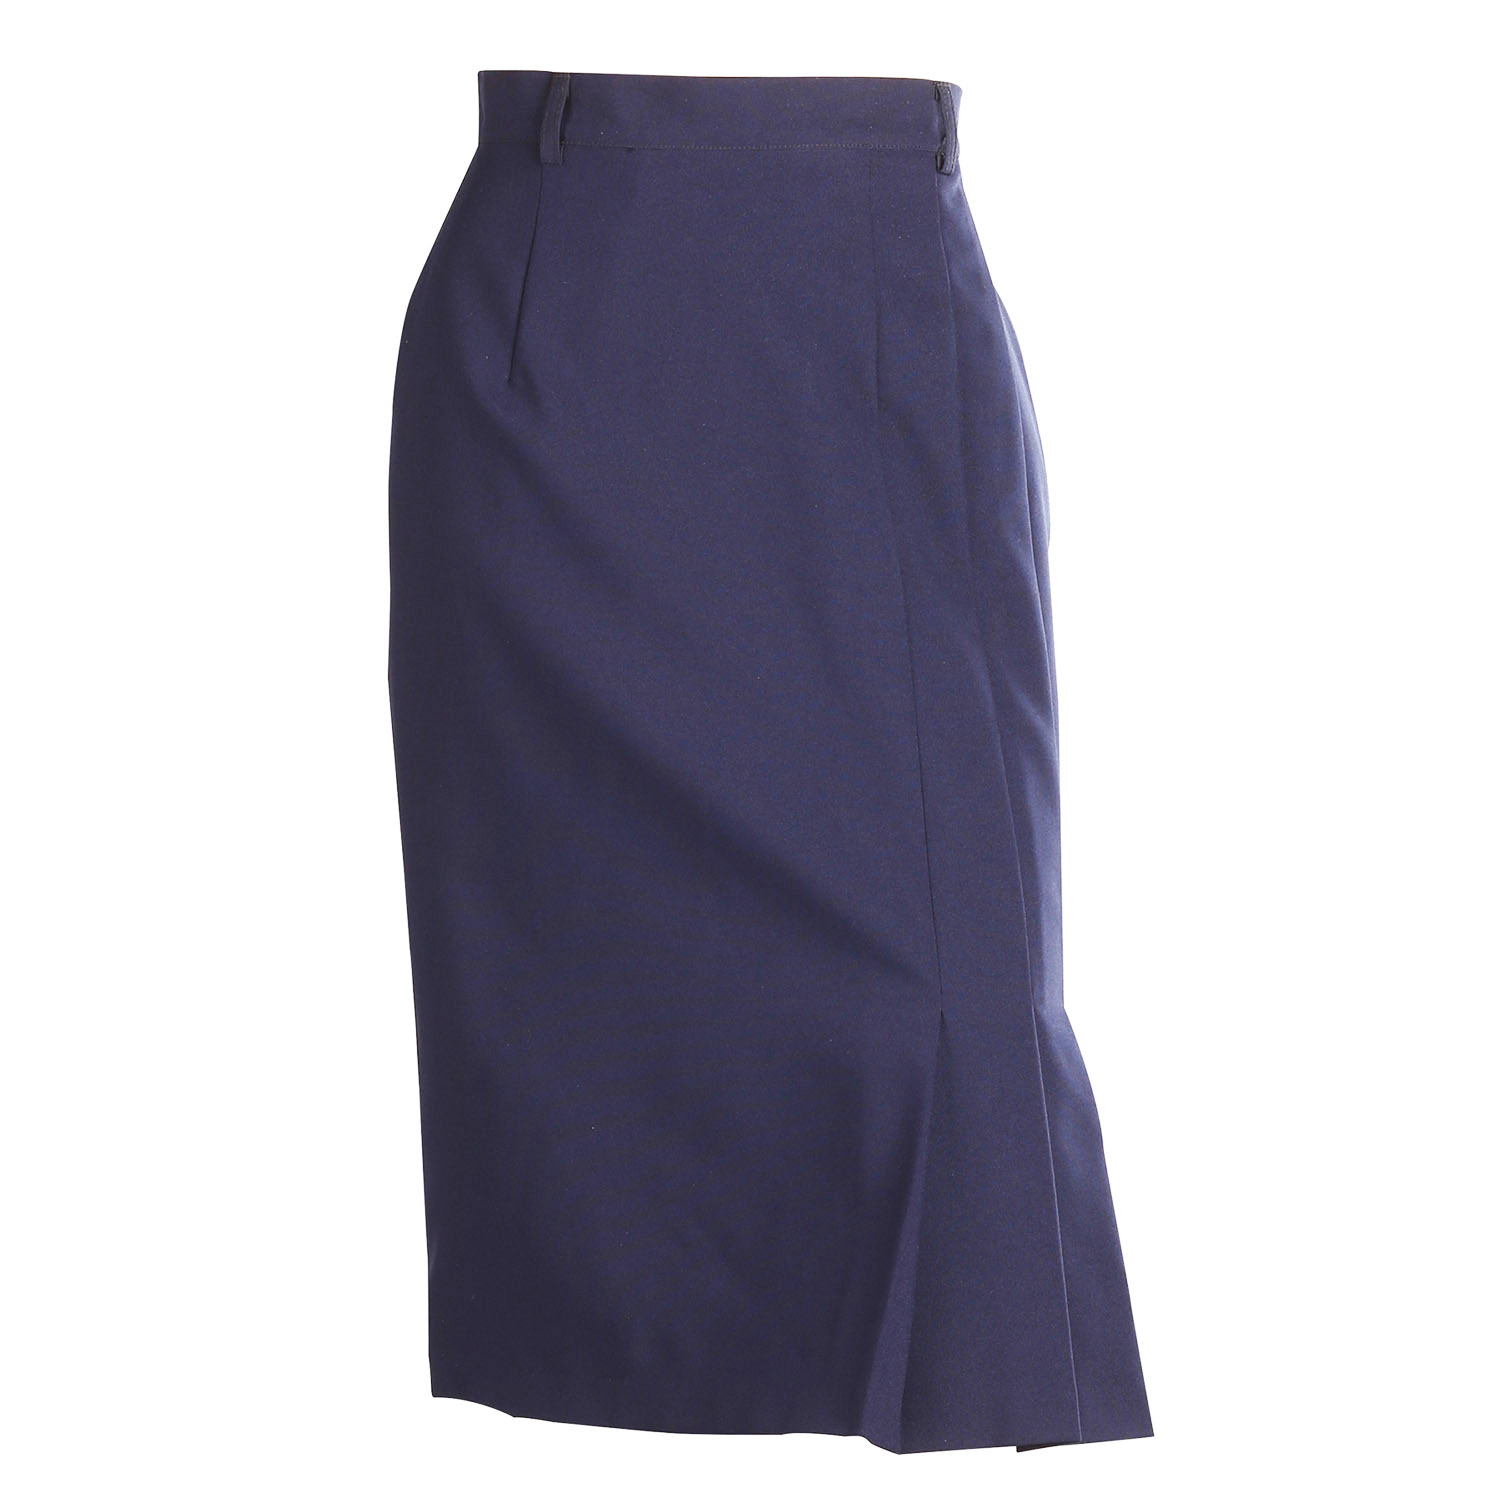 Womens Skirt for Window Clerks (260)